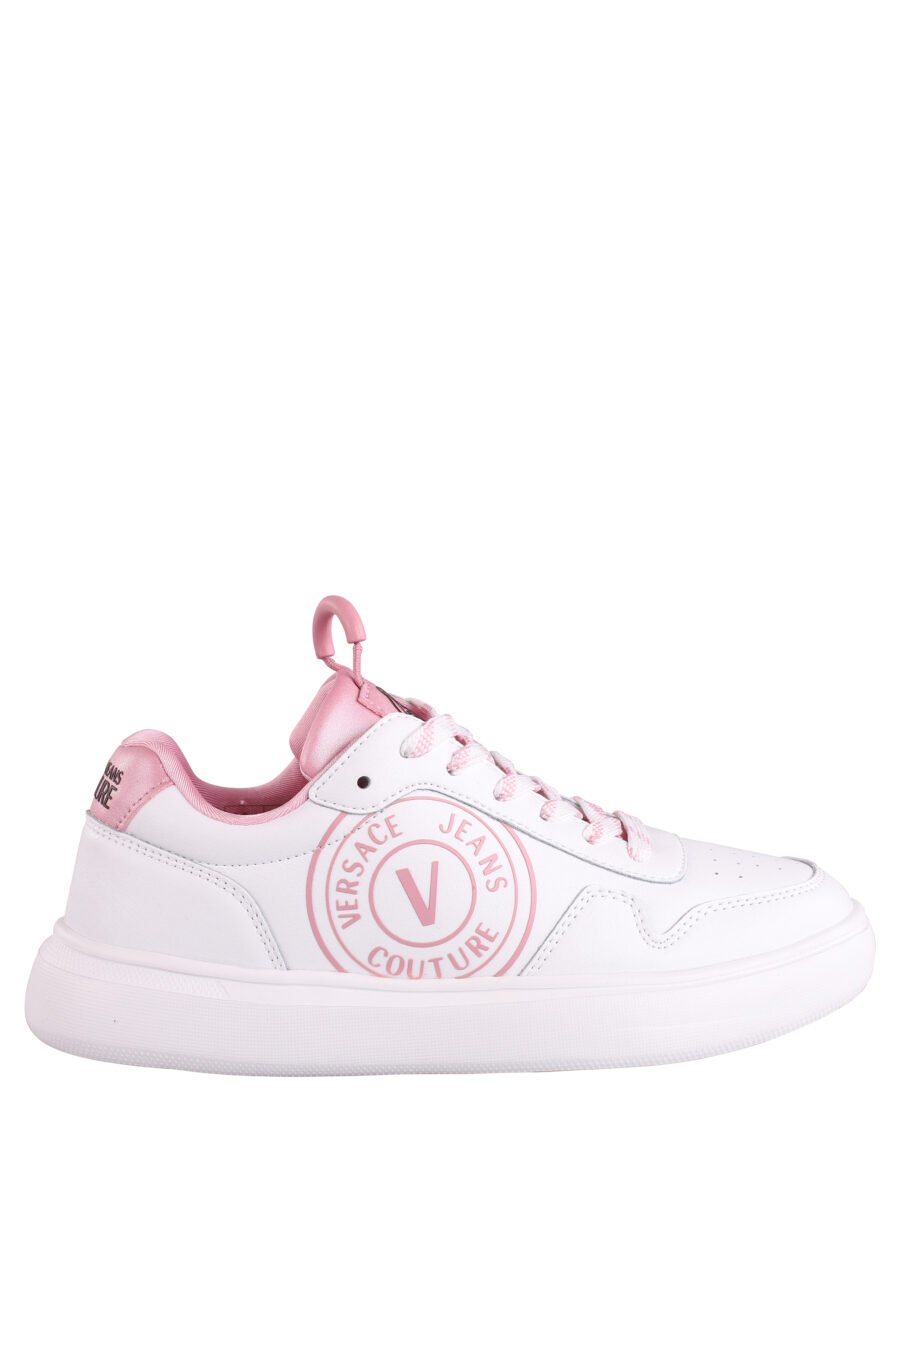 Zapatillas blancas con detalles y logo rosa - IMG 9015